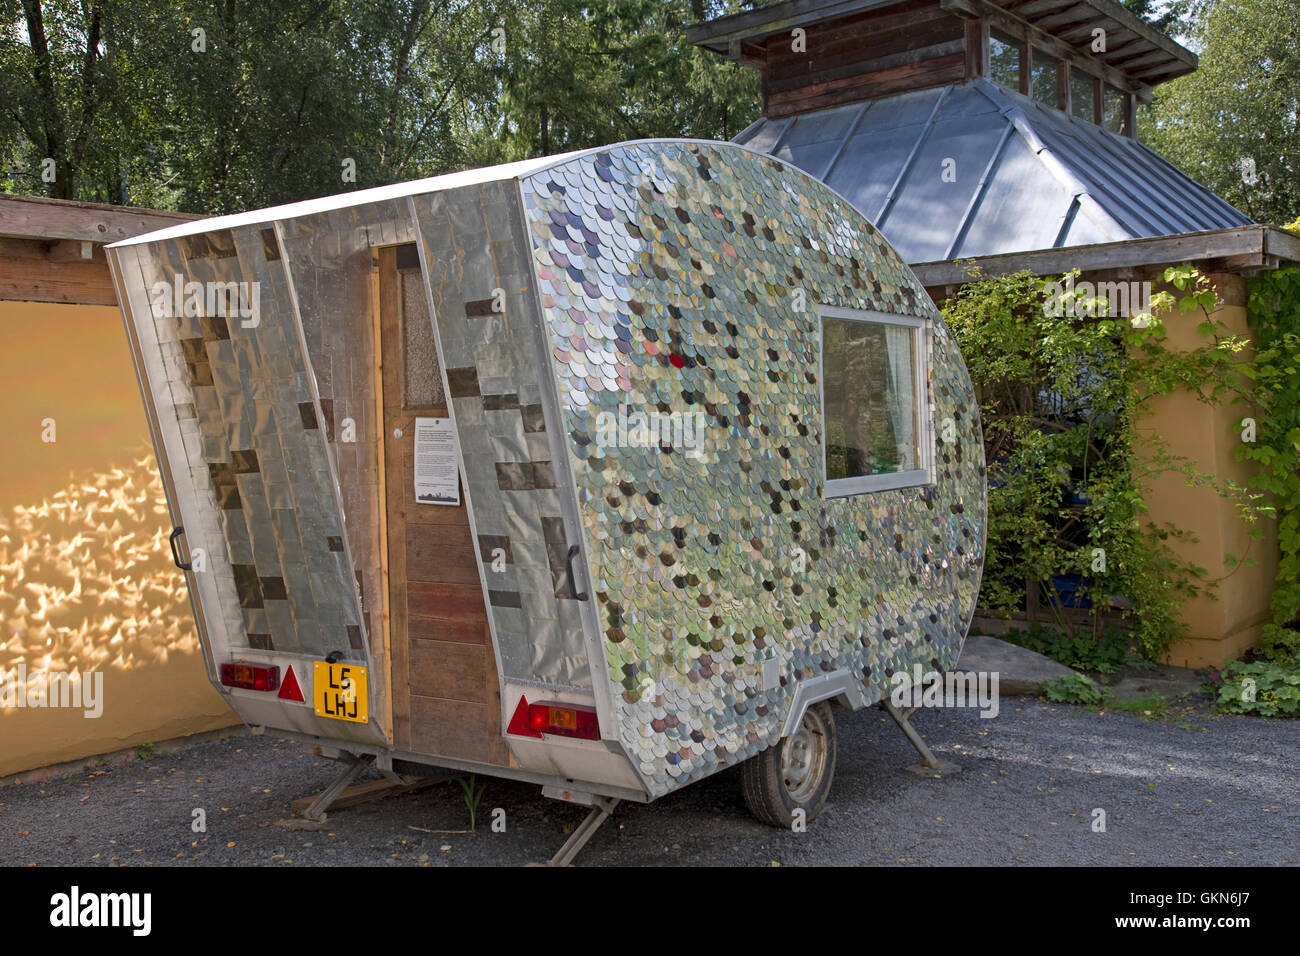 Caravane recyclée Banque de photographies et d'images à haute résolution -  Alamy